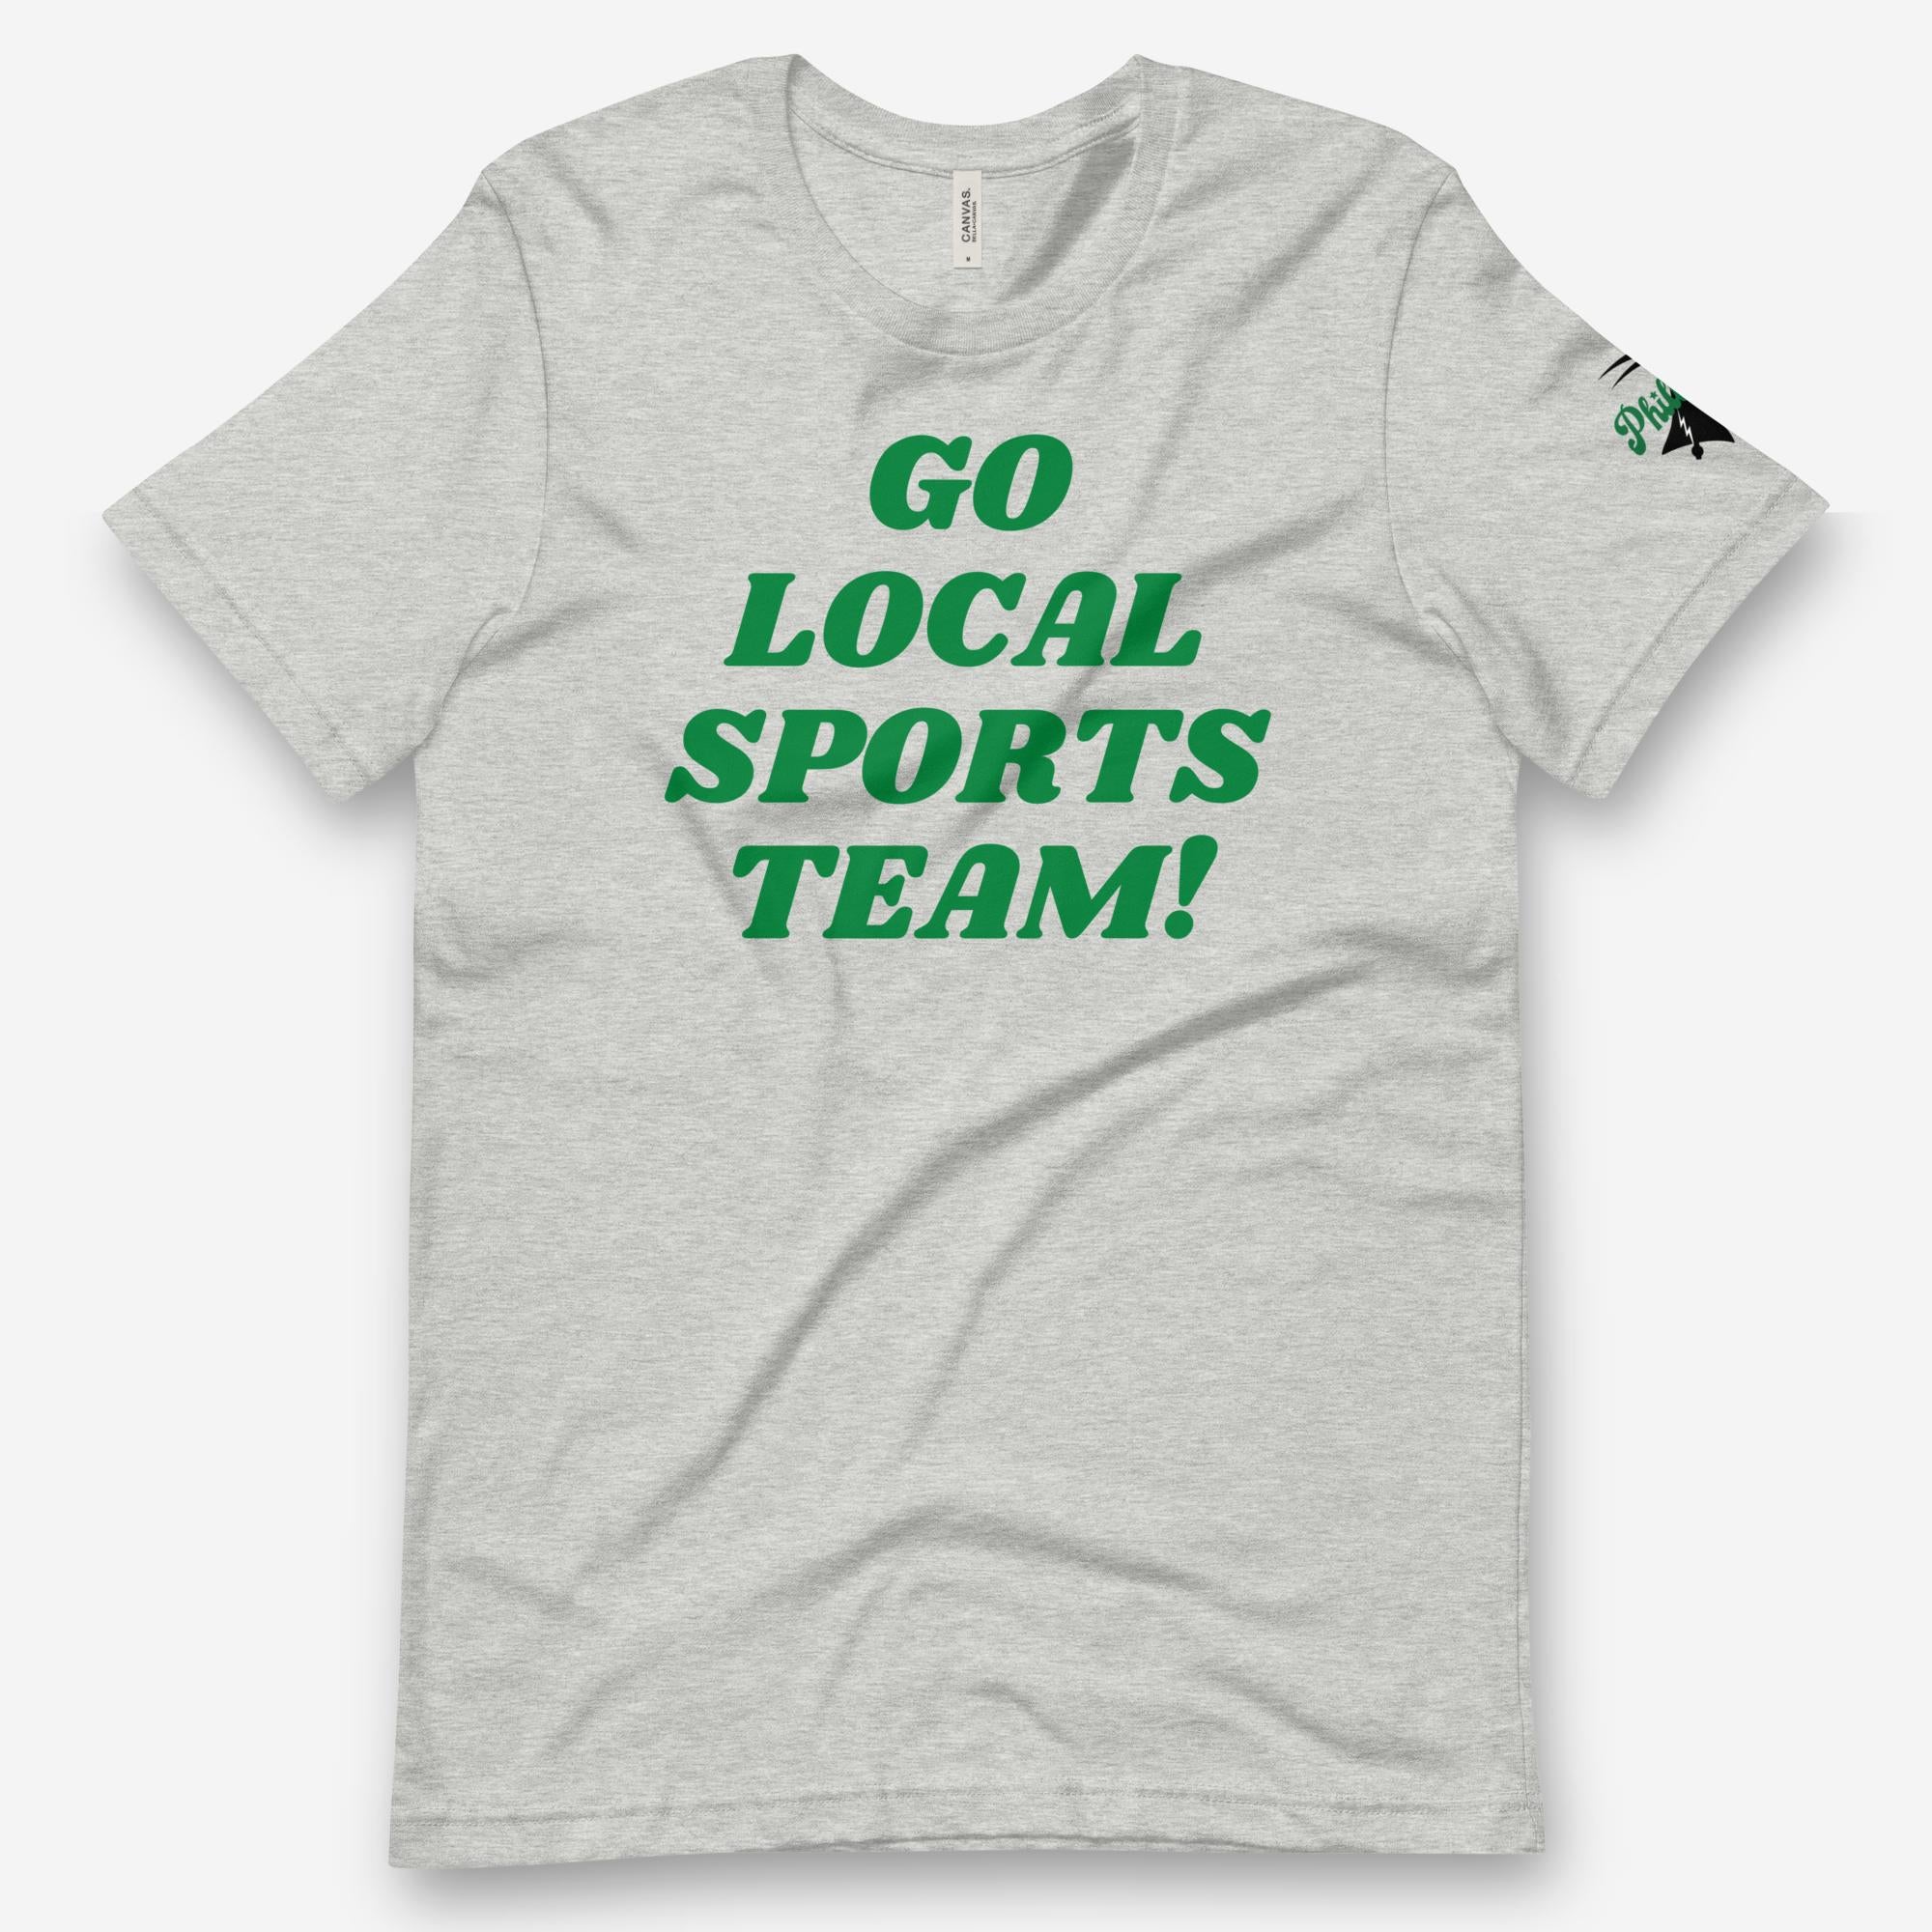 "Go Local Sports Team!" Tee